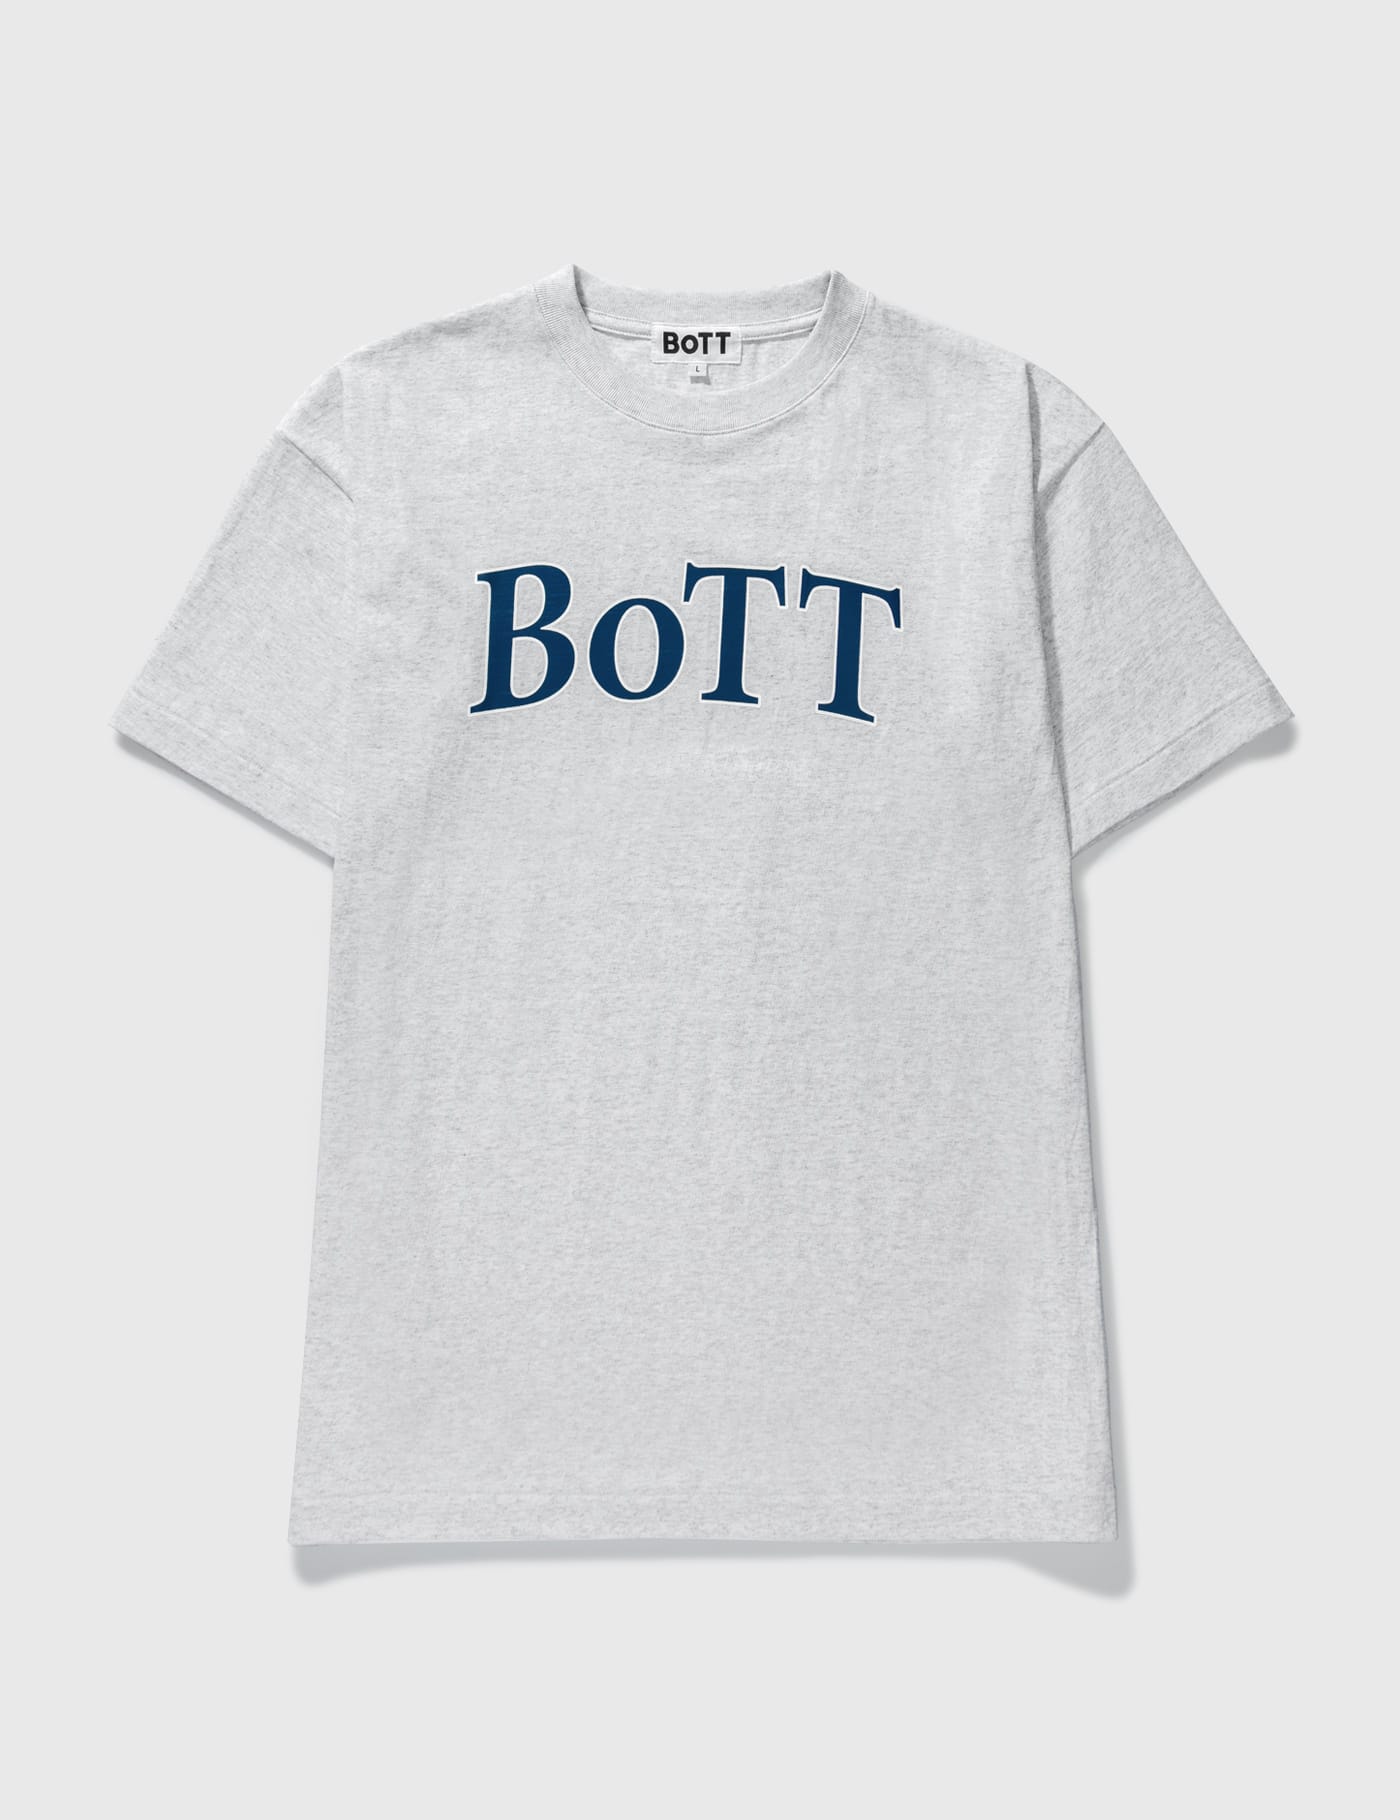 BoTT - BoTT OG Logo T-shirt | HBX - ハイプビースト(Hypebeast)が ...